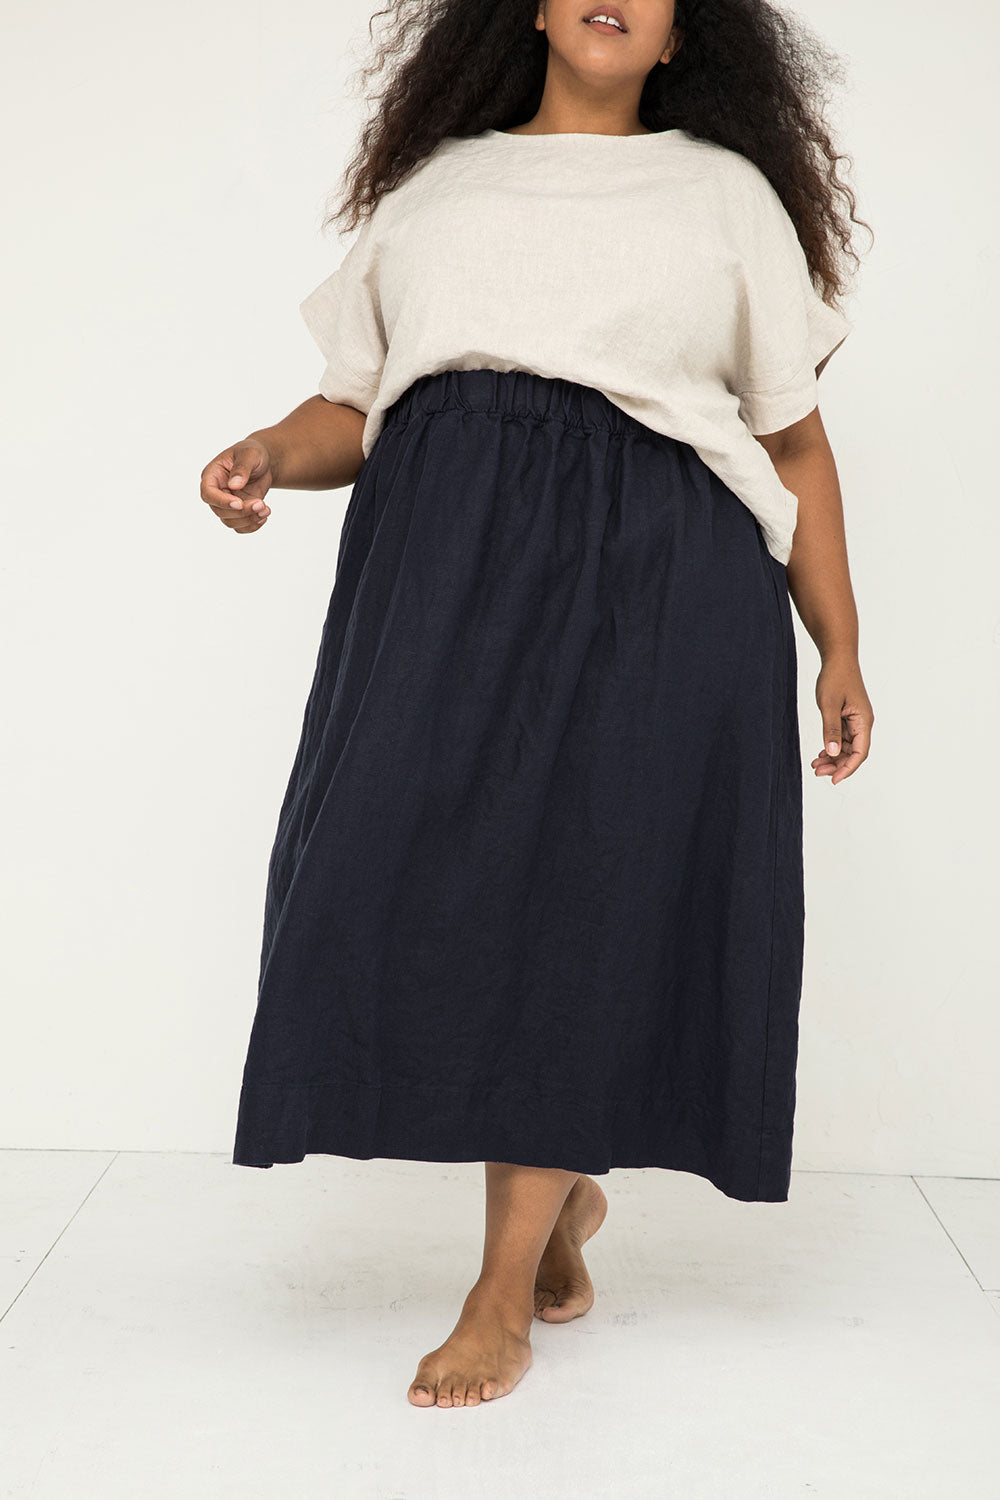 Bel Skirt in Midweight Linen Navy#color_navy